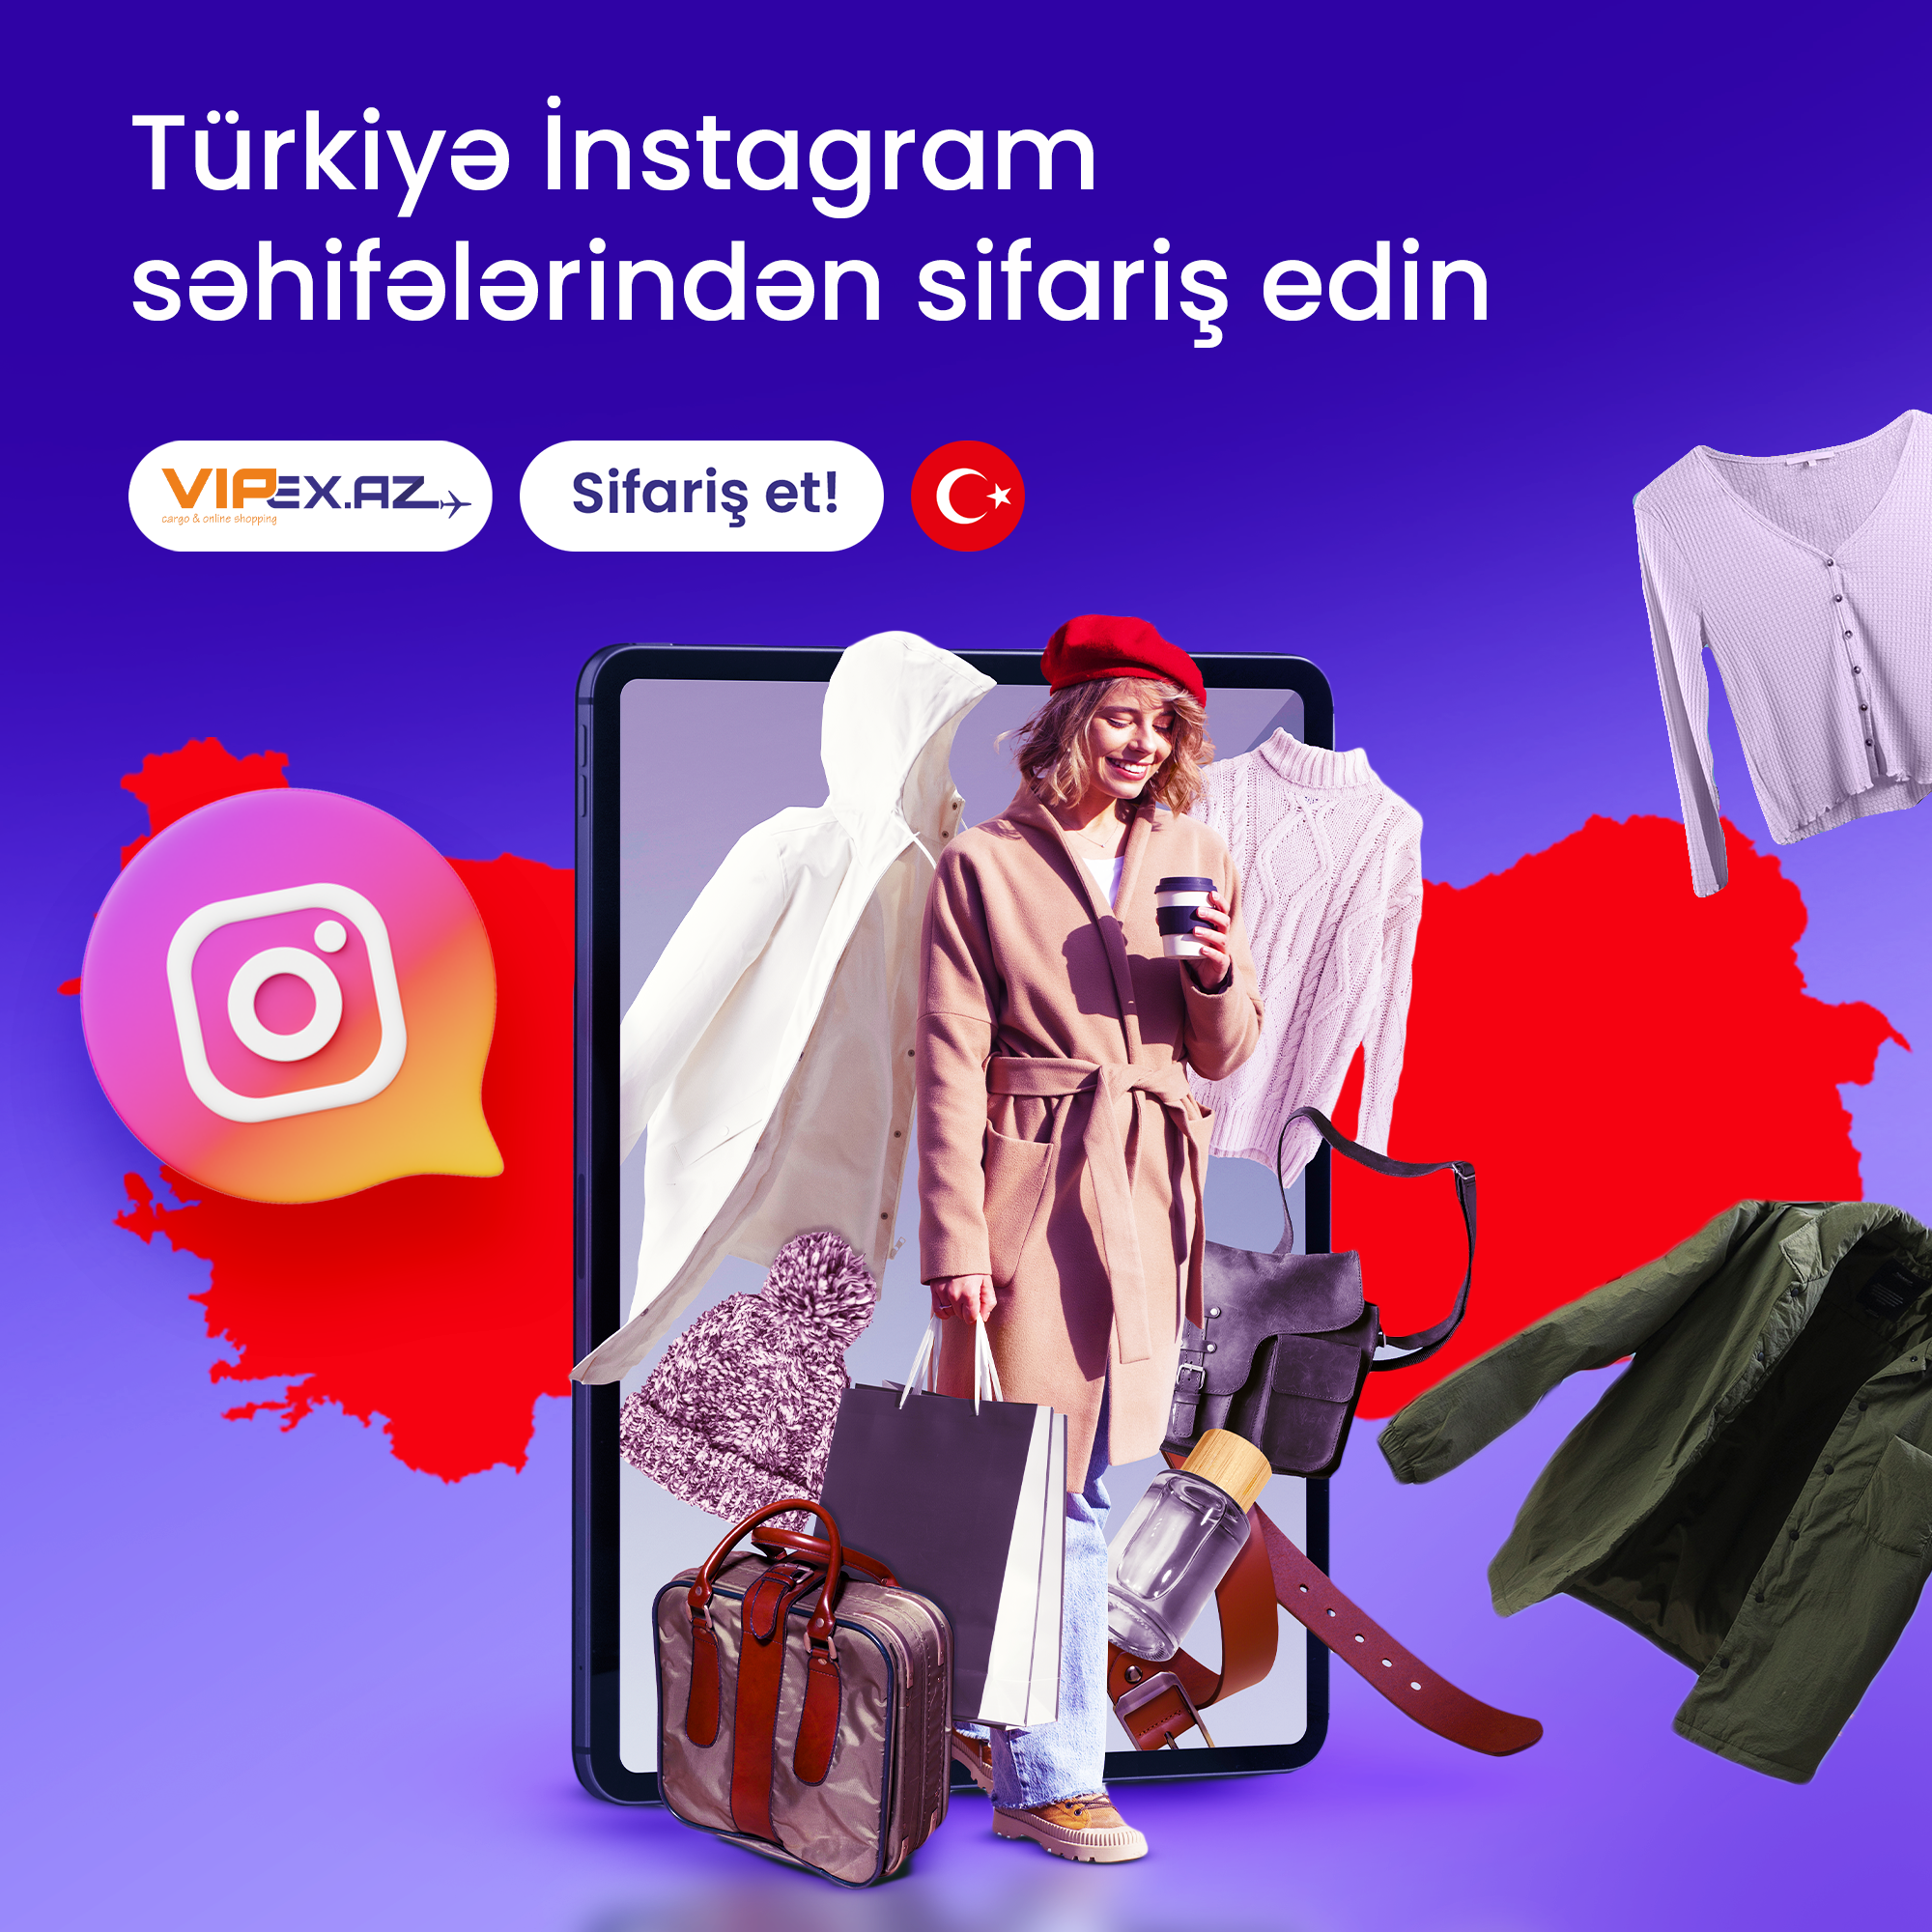 Vipex.az ilə Türkiyədəki instagram səhifələrindən sifarişlər edəbilərsiz